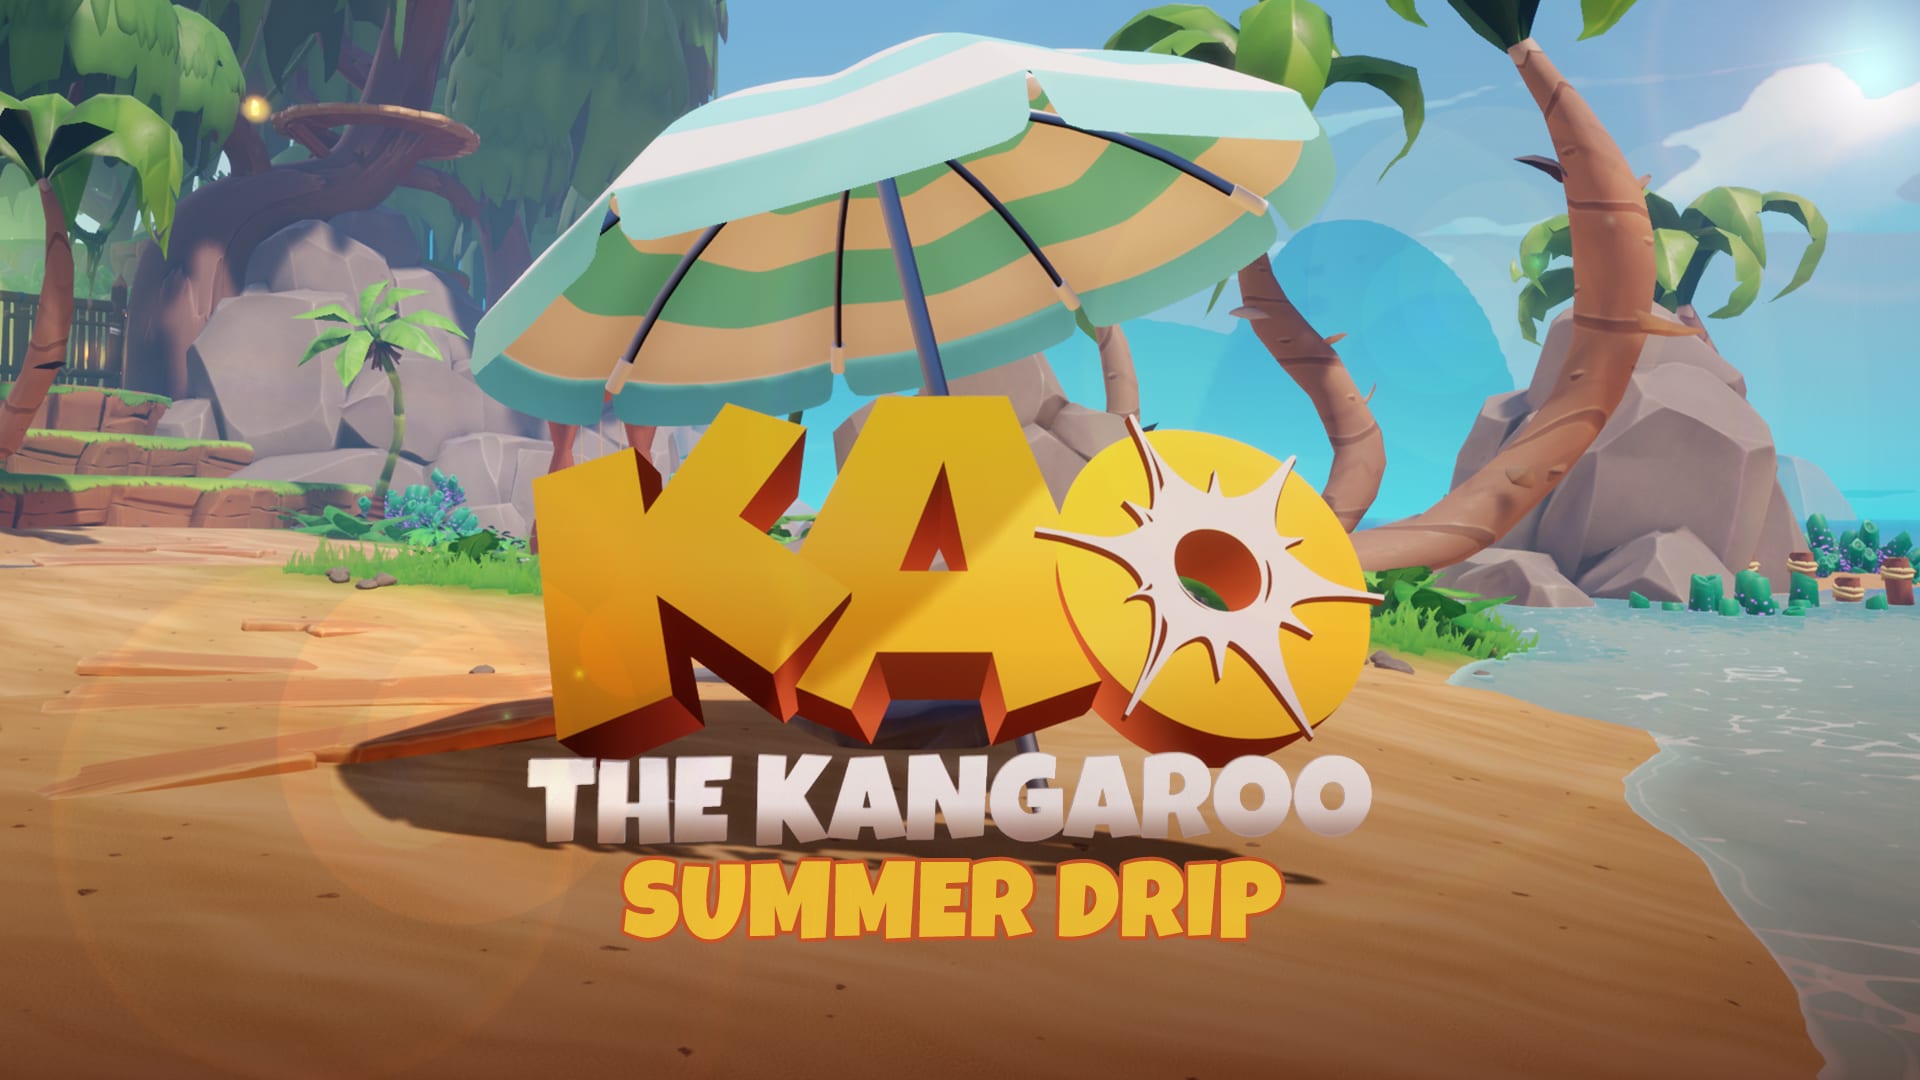 Kao the Kangaroo: Summer Drip